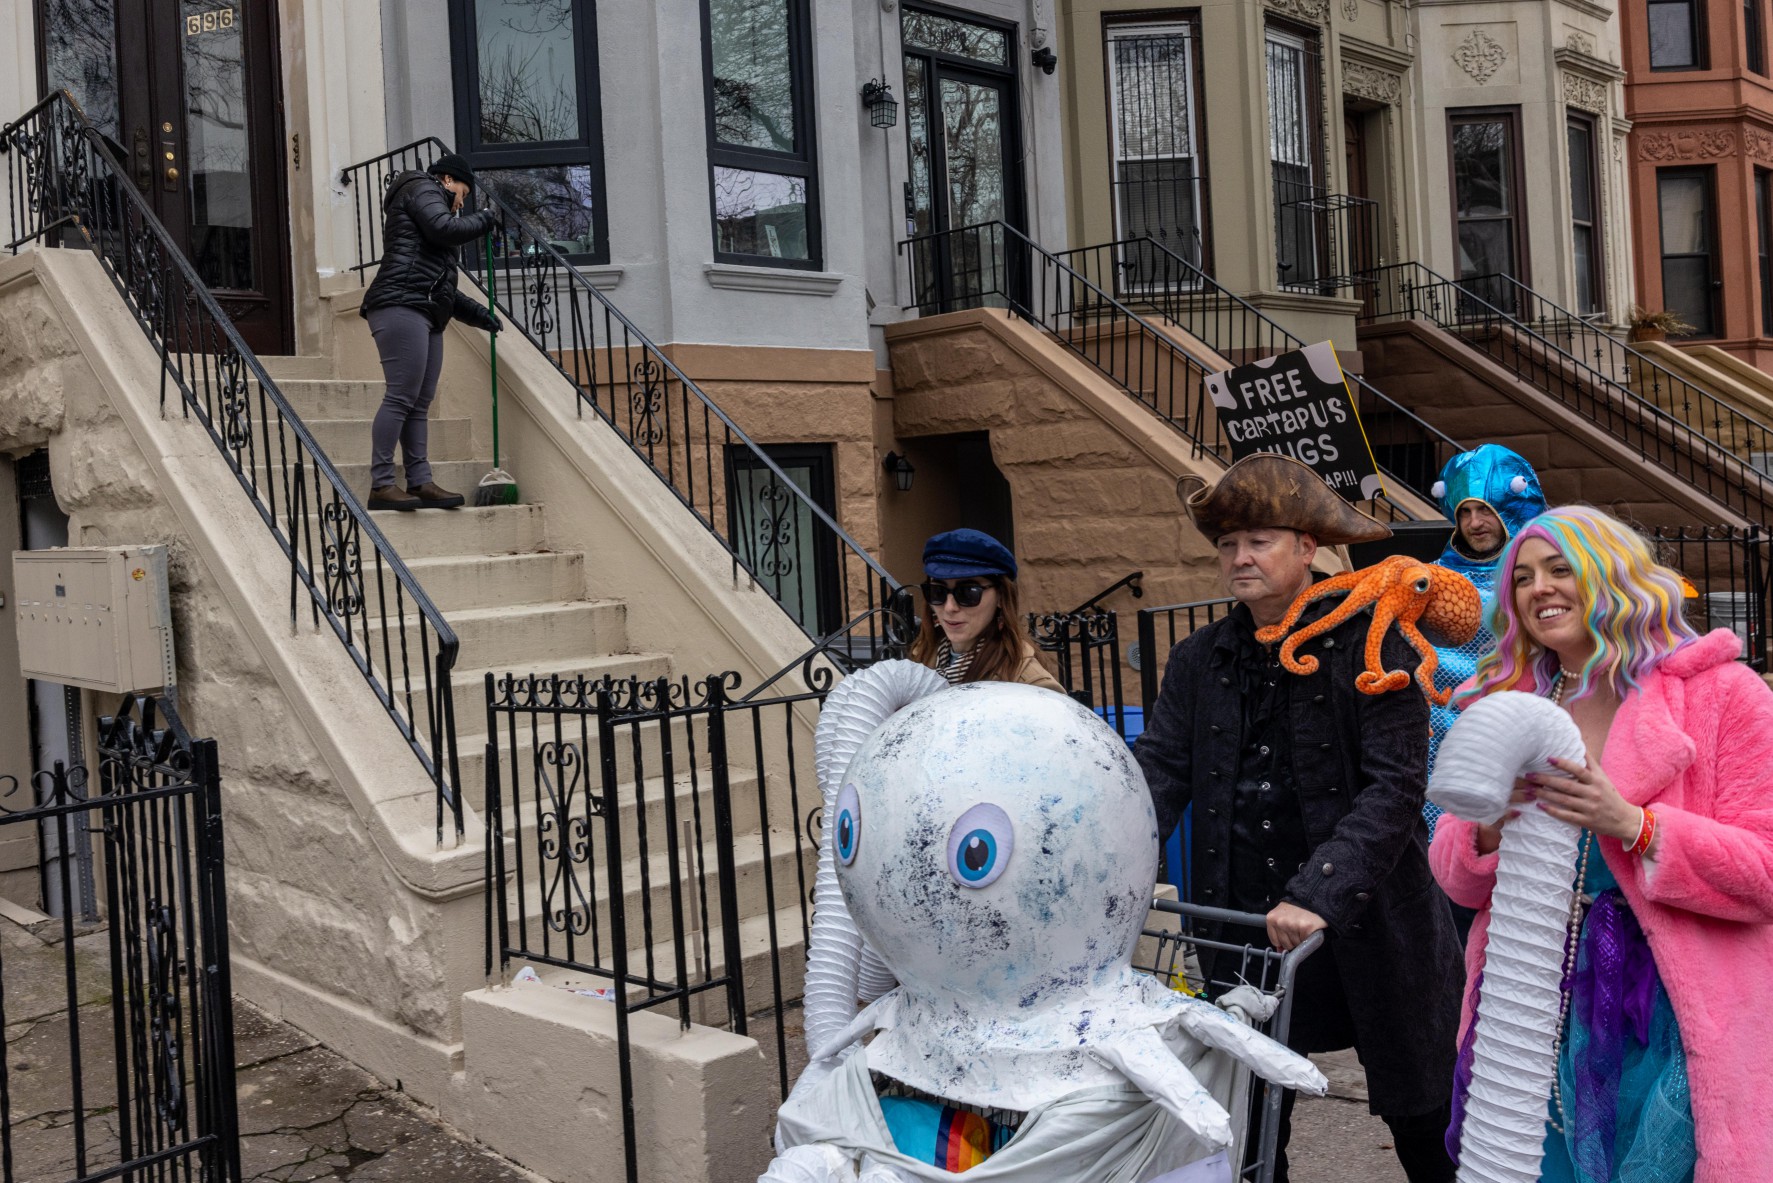 Idiotarod-Teilnehmer gingen am Wochenende in aufwendigen Kostümen durch die Straßen von New York